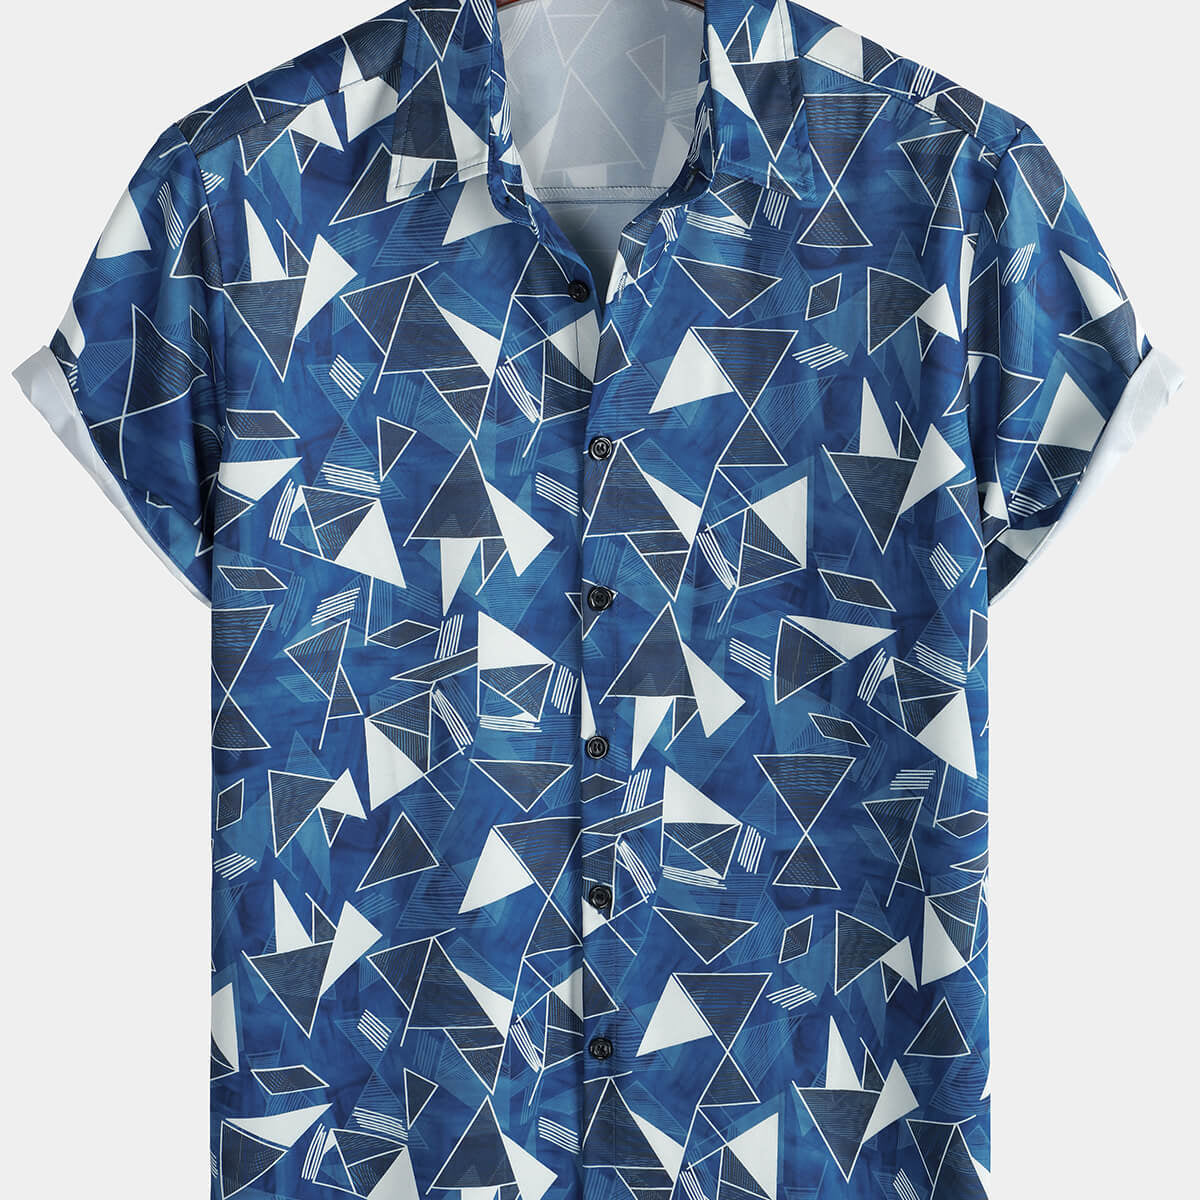 Men's Casual Art Blue Geometric Print Short Sleeve Summer Beach Button Up Shirt